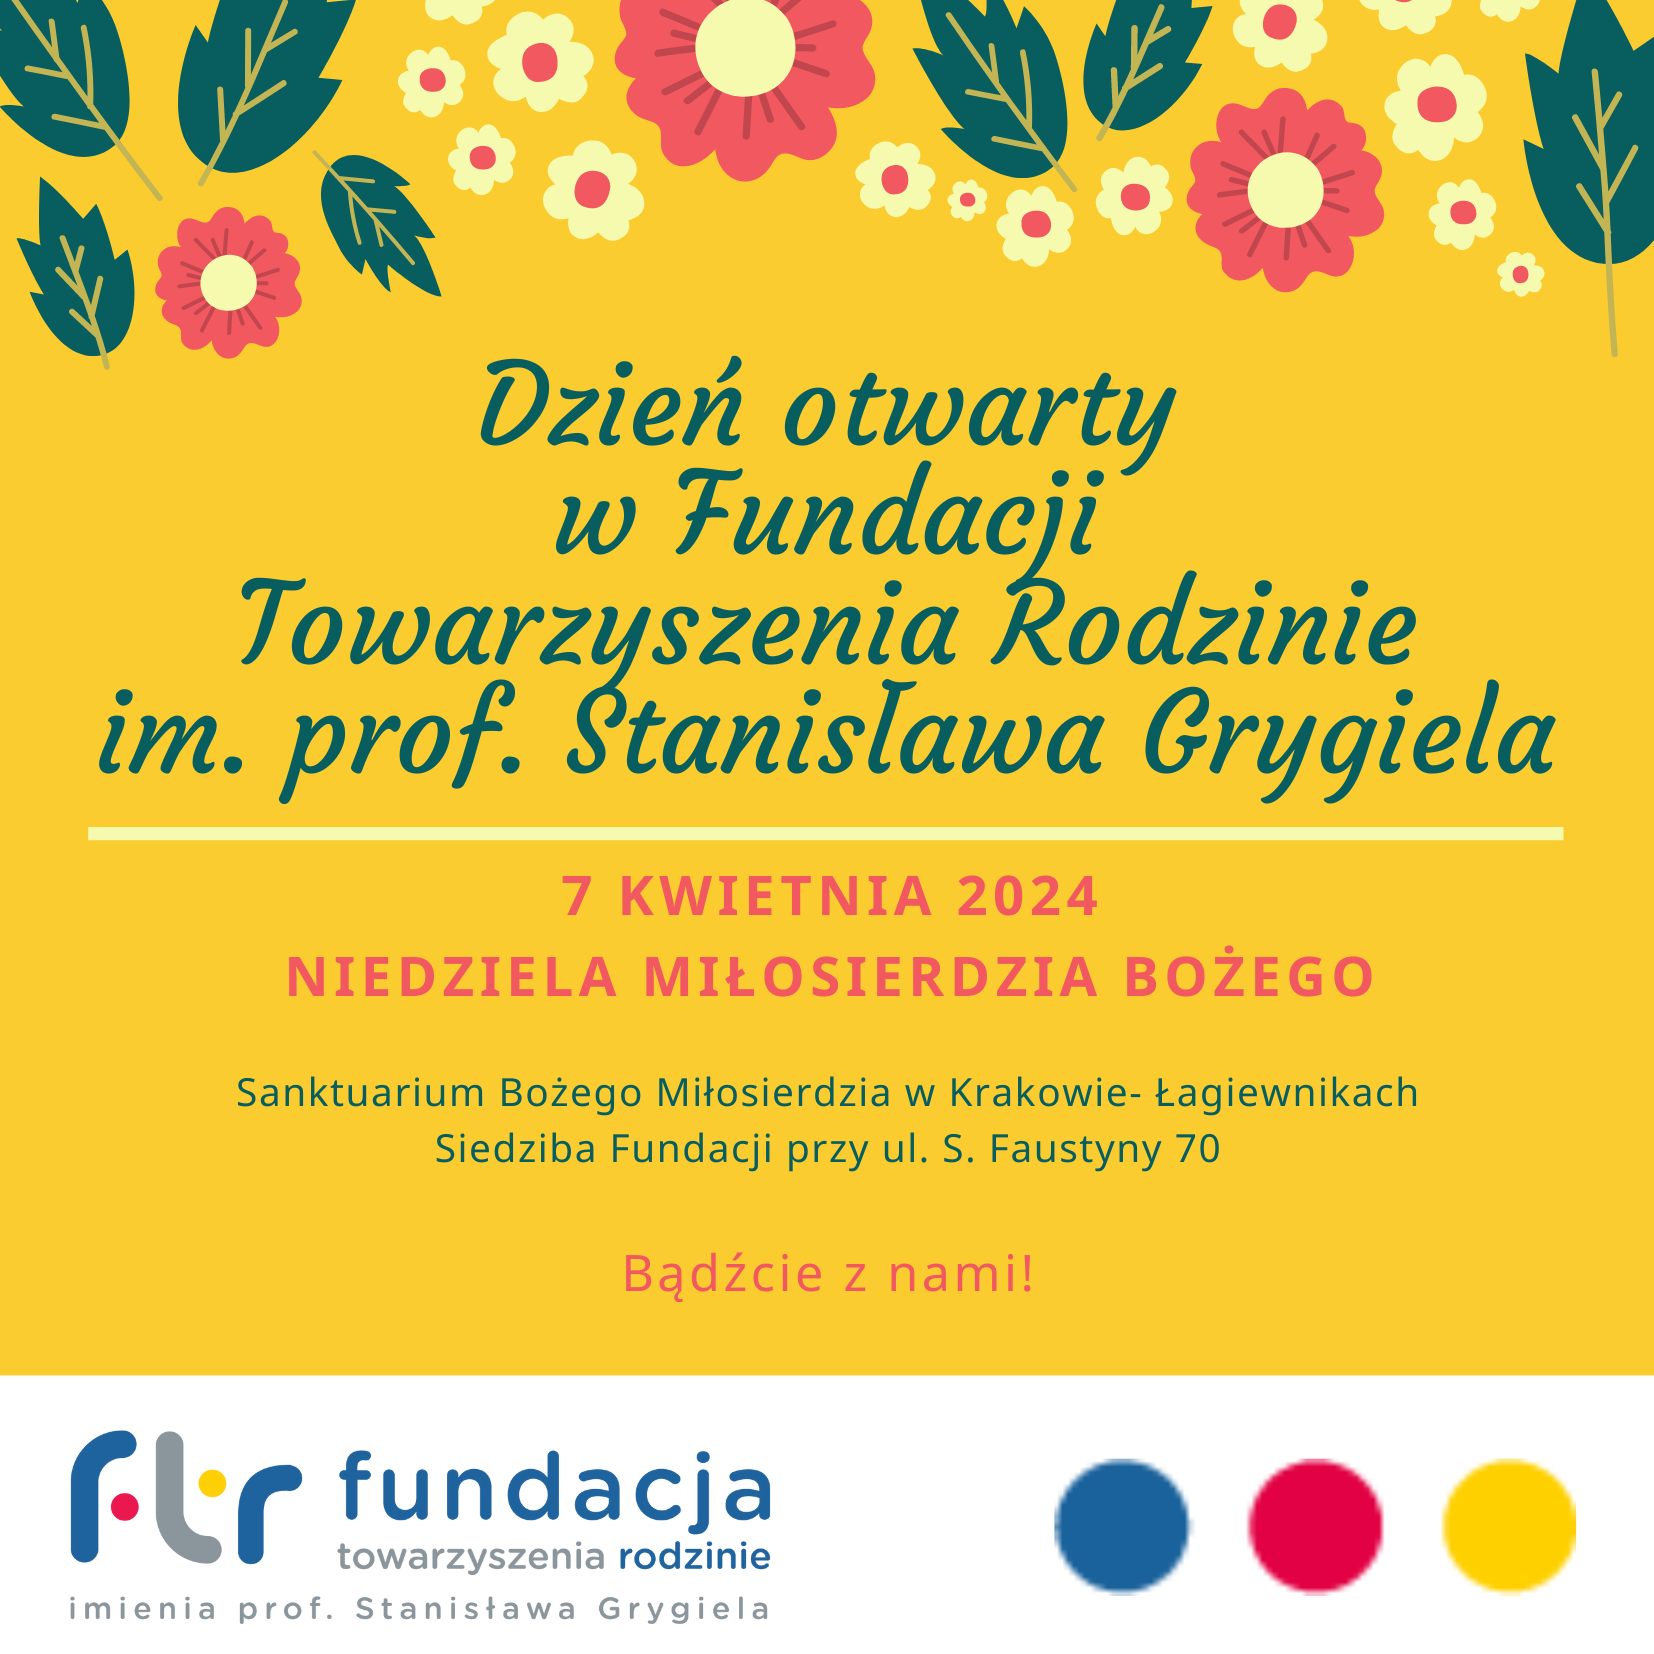 Dzień otwarty w Fundacji Towarzyszenia Rodzinie im. prof. Stanisława Grygiela – 7 kwietnia